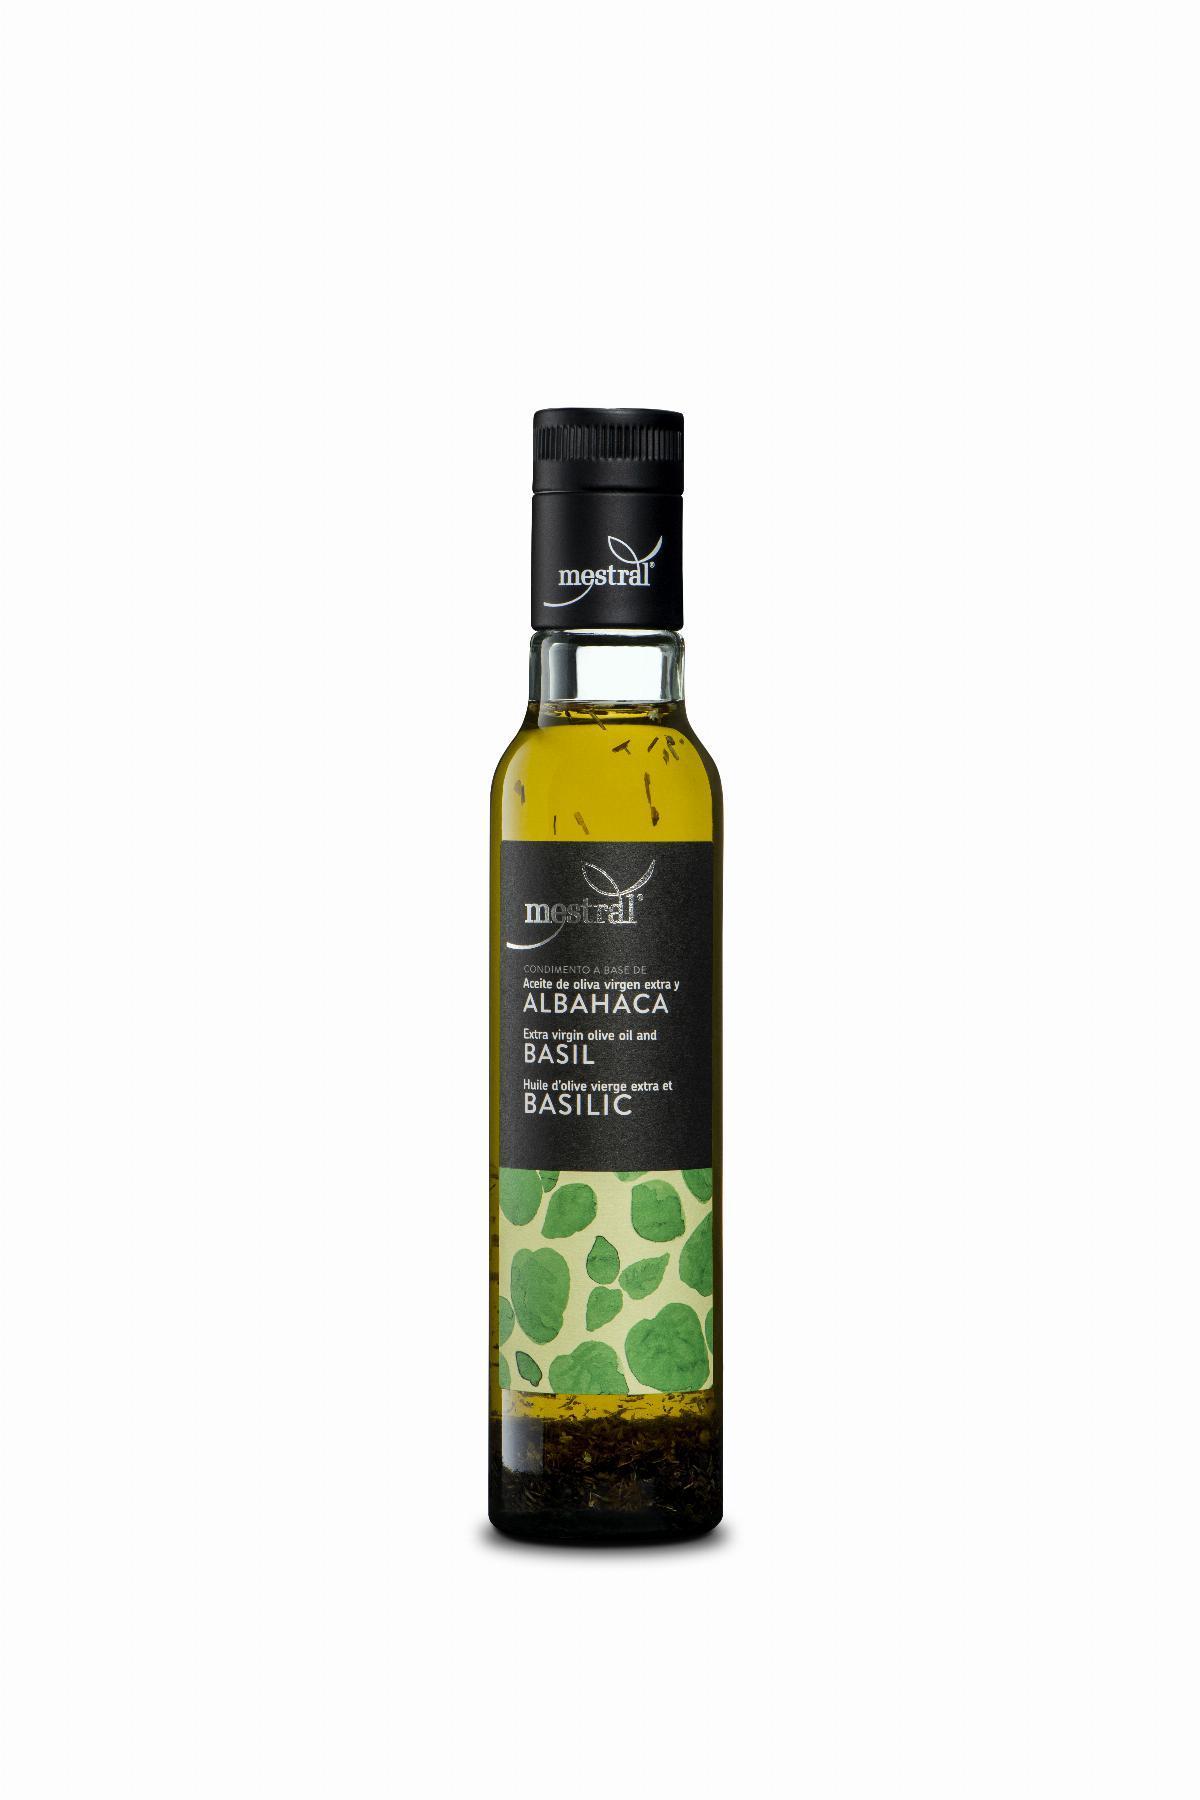 Huile d'olive et Condiments - Oli d'Oliva Verge Extra Mestral amb Alfàbrega, ampolla Dòrica transparent, 250ml, ES-EN-FR - Mestral Cambrils